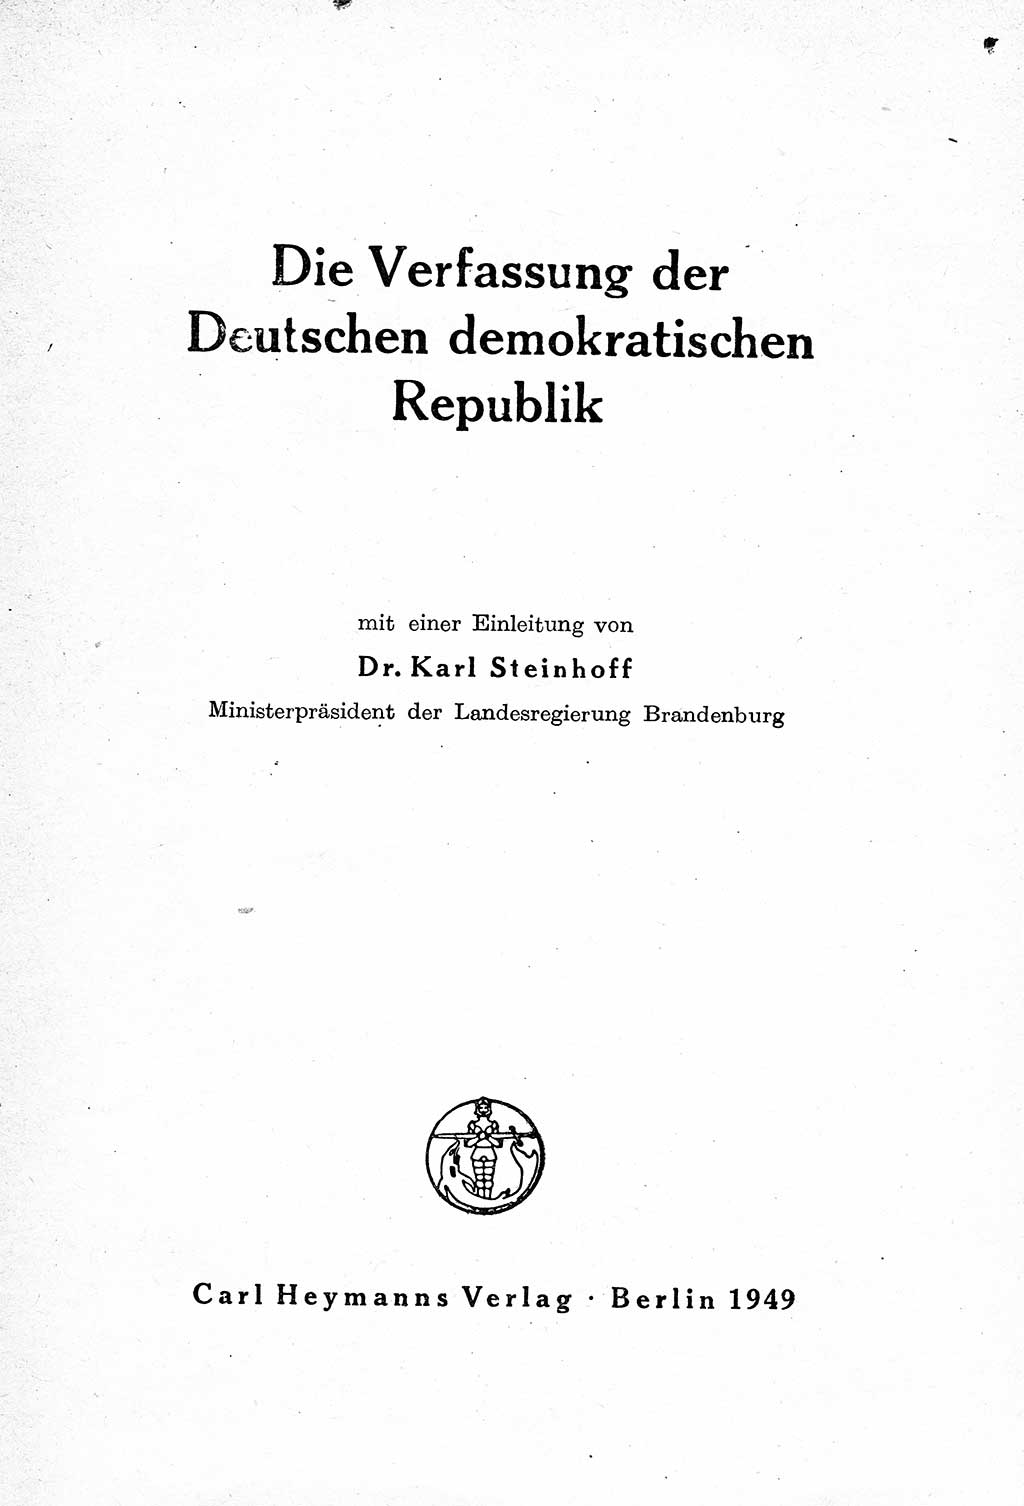 Verfassung der Deutschen Demokratischen Republik (DDR) mit einer Einleitung von Karl Steinhoff 1949, Seite 3 (Verf. DDR Einl. K. S. 1949, S. 3)